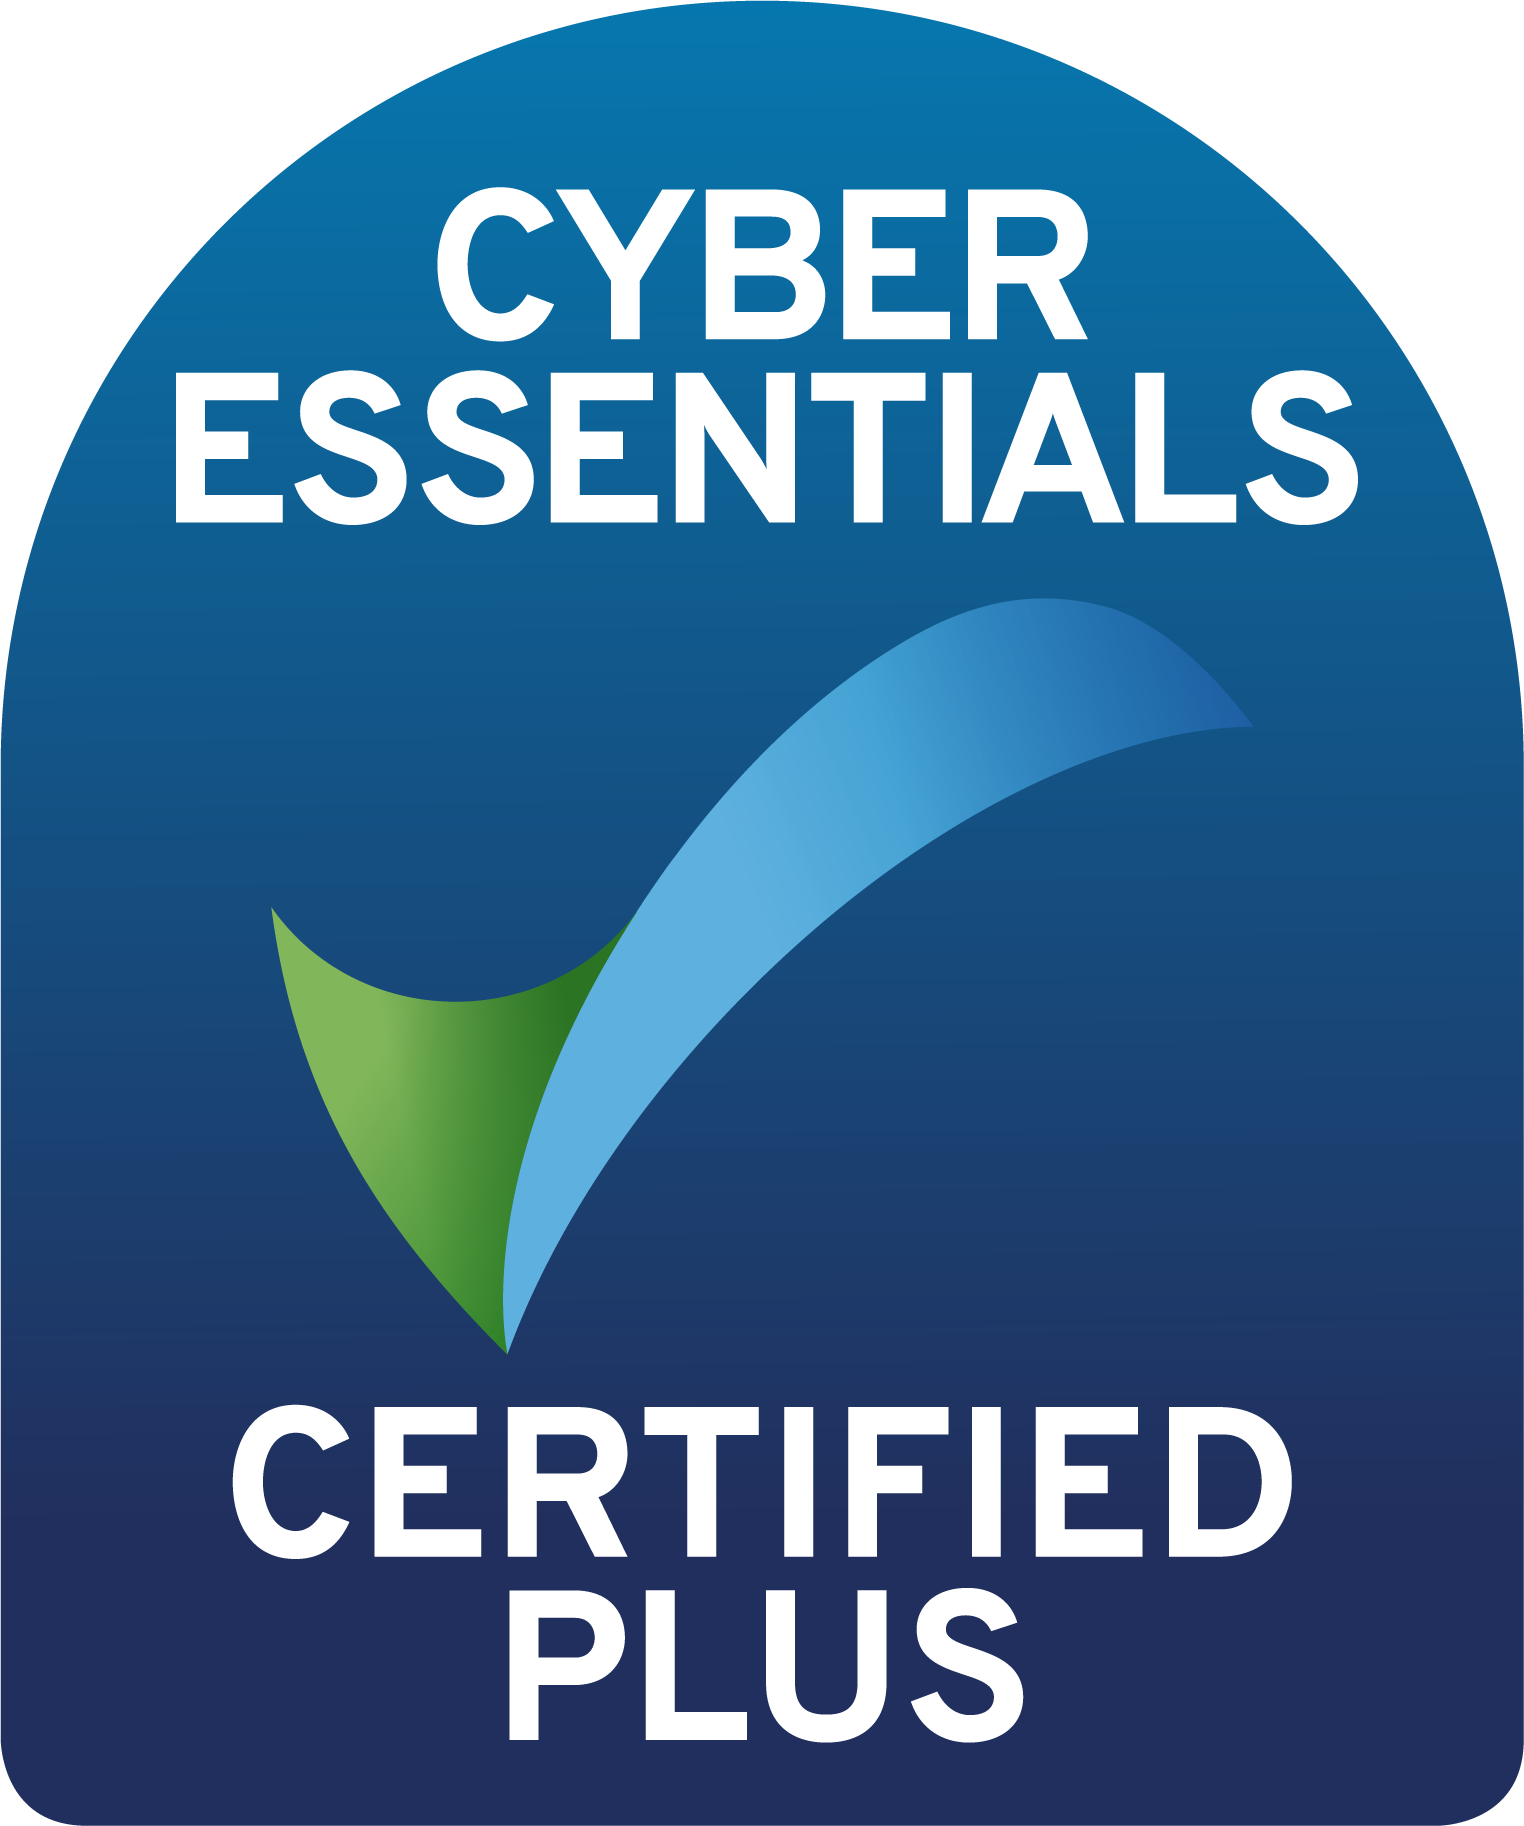 Cyber Essentials Certificate Plus